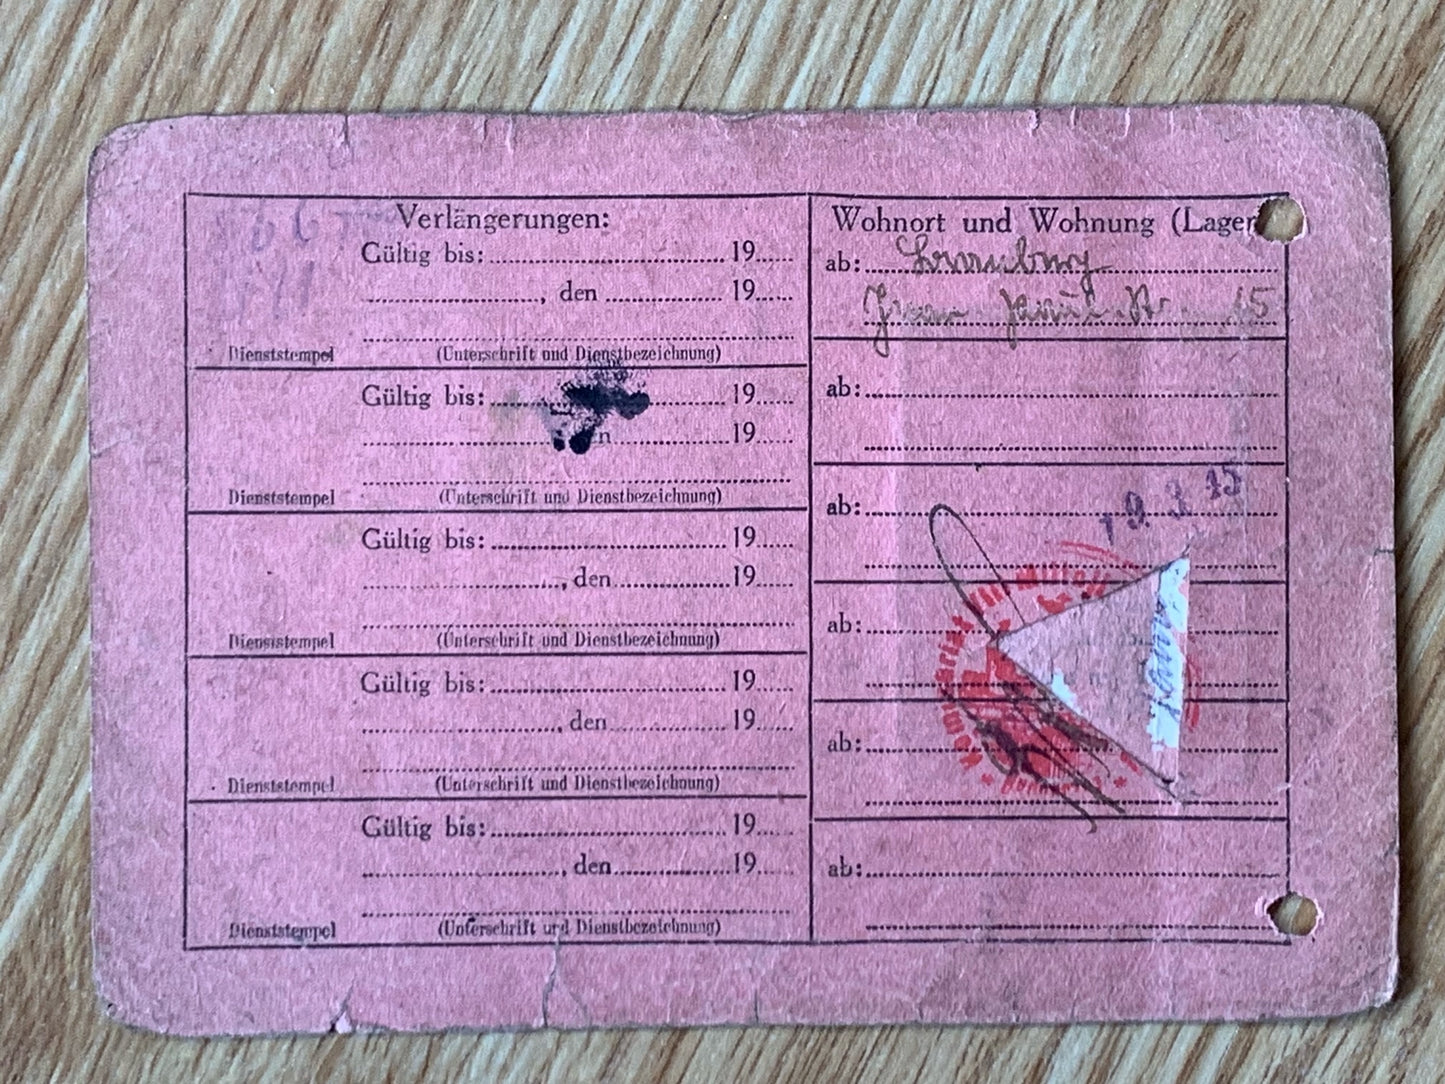 Reichsbahn Polish worker ID card - 1944